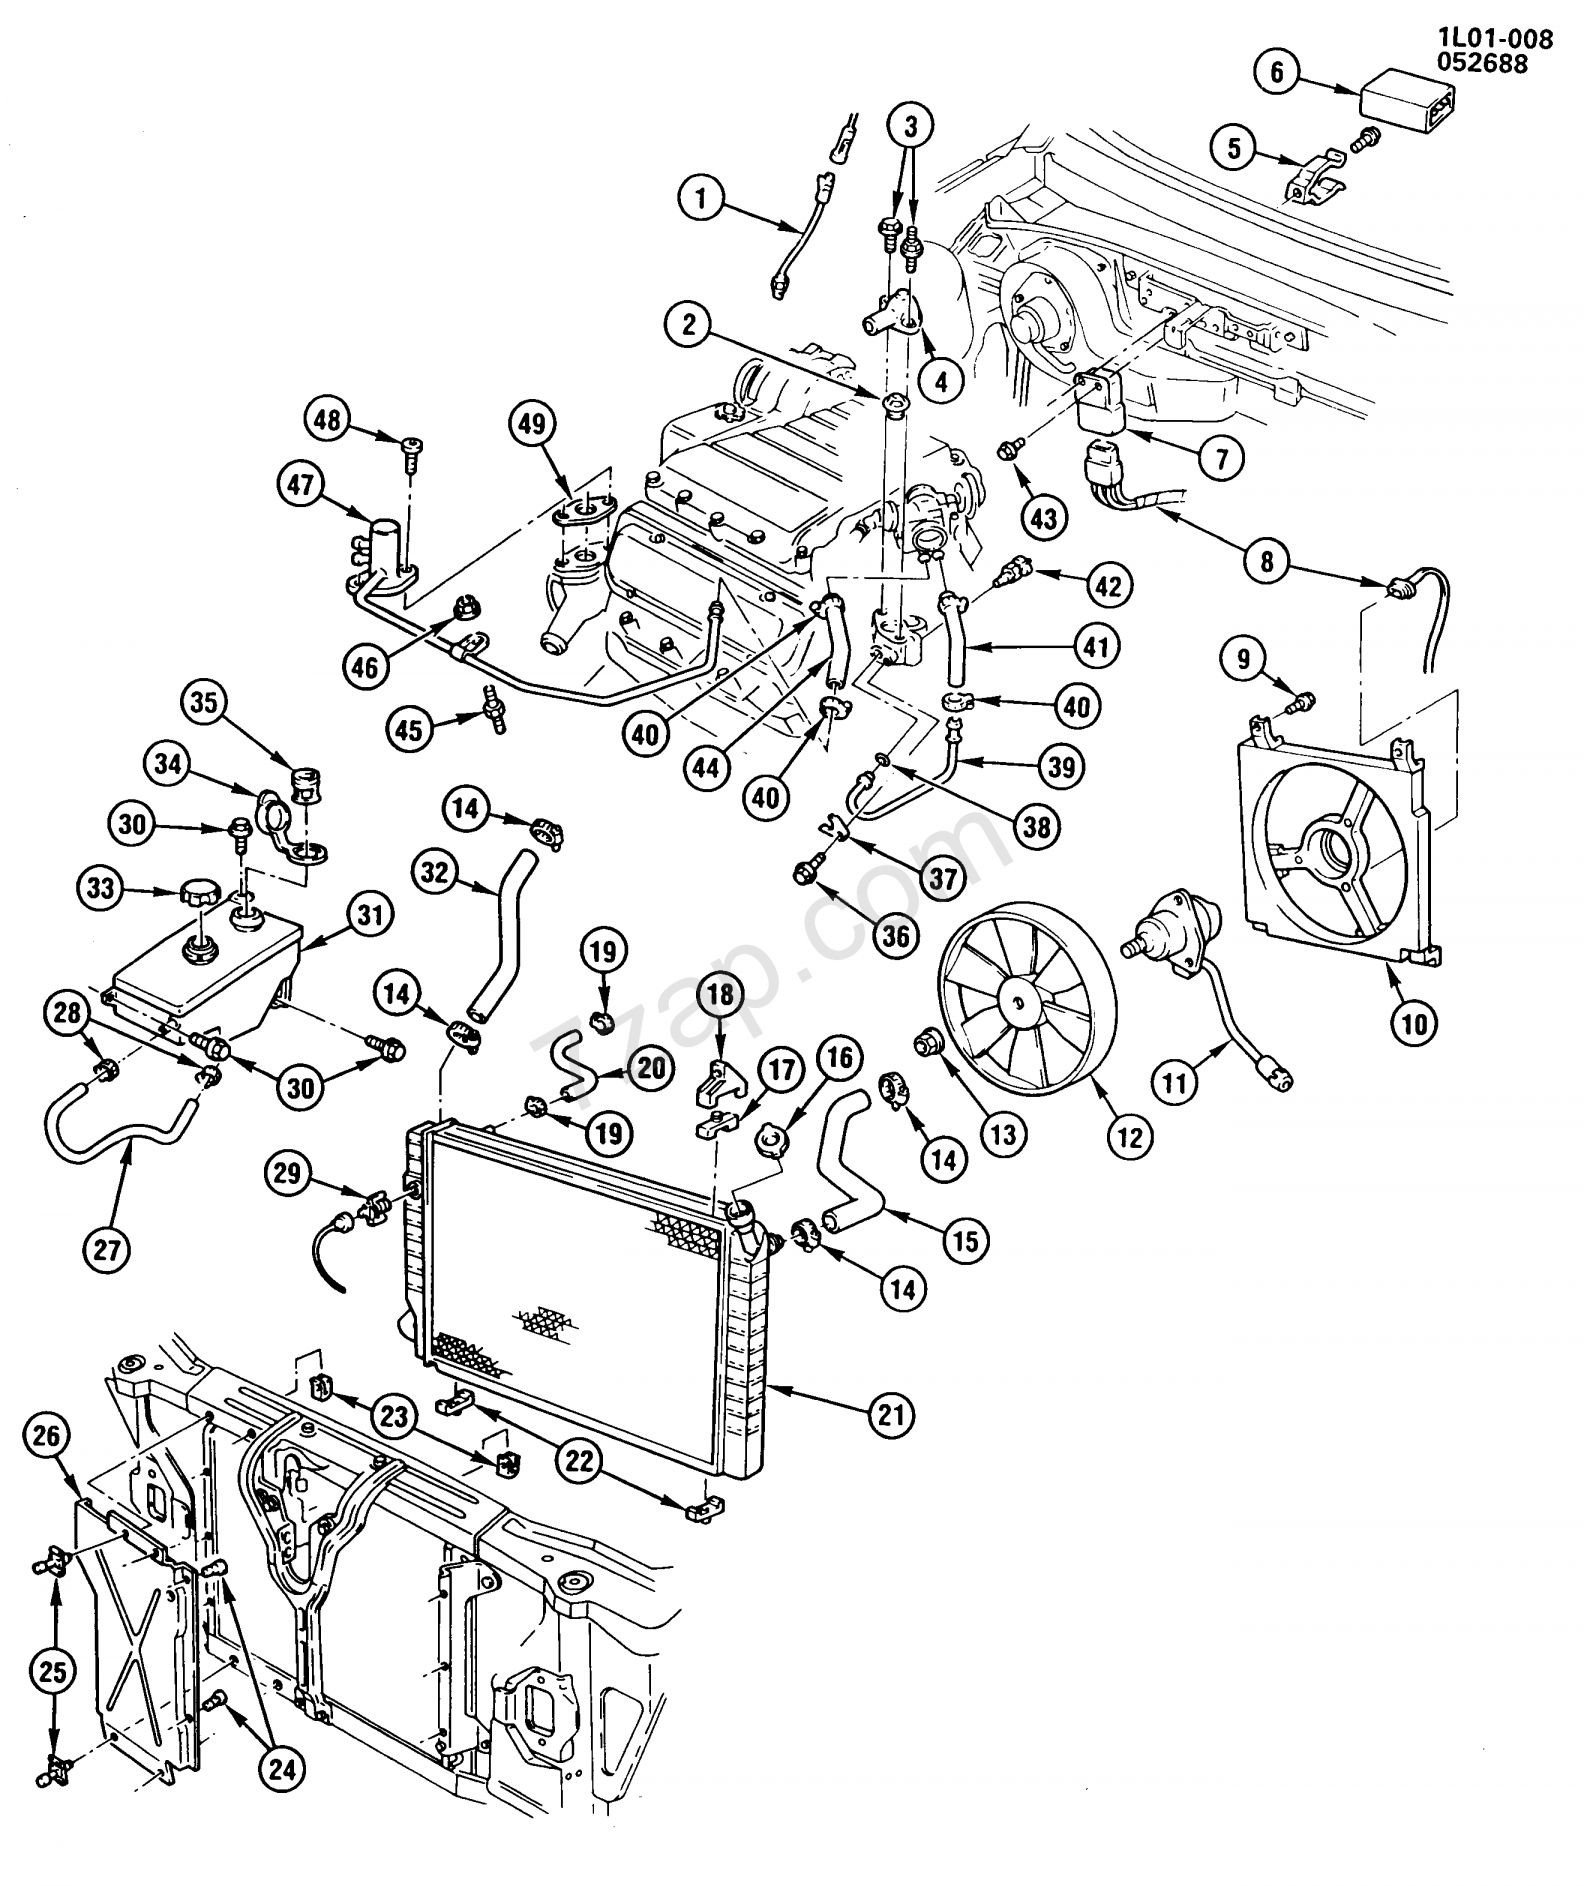 Chev.305 Engine Wiring Diagram Chevy 305 Engine Wiring Diagram and Chevy L V Engine Diagram – New … Of Chev.305 Engine Wiring Diagram